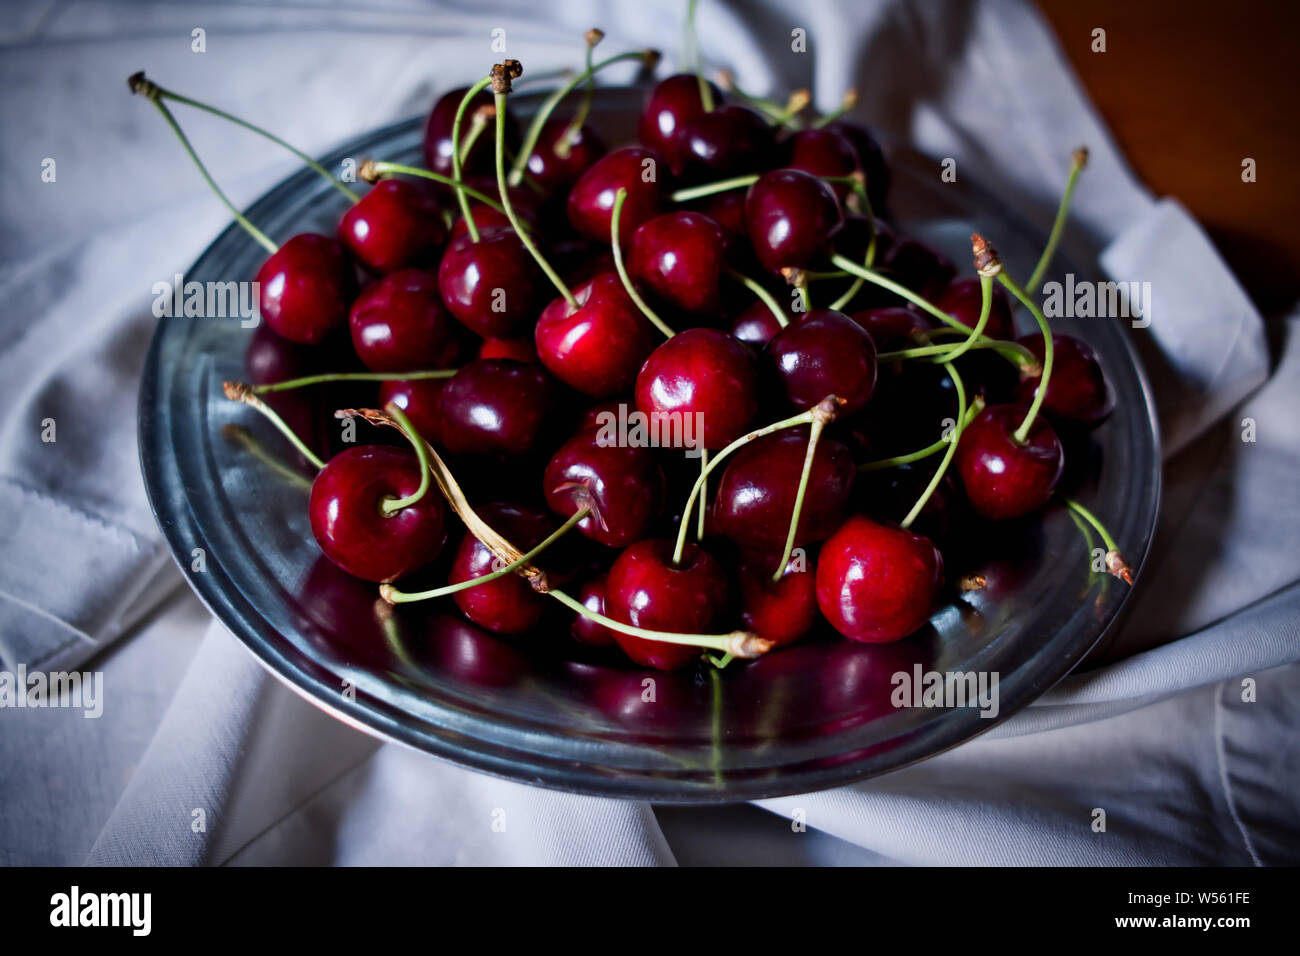 La ciliegia, rosso ciliegie mature nella piastra e sul tessuto, chiave di basso o fotografia scuro Foto Stock